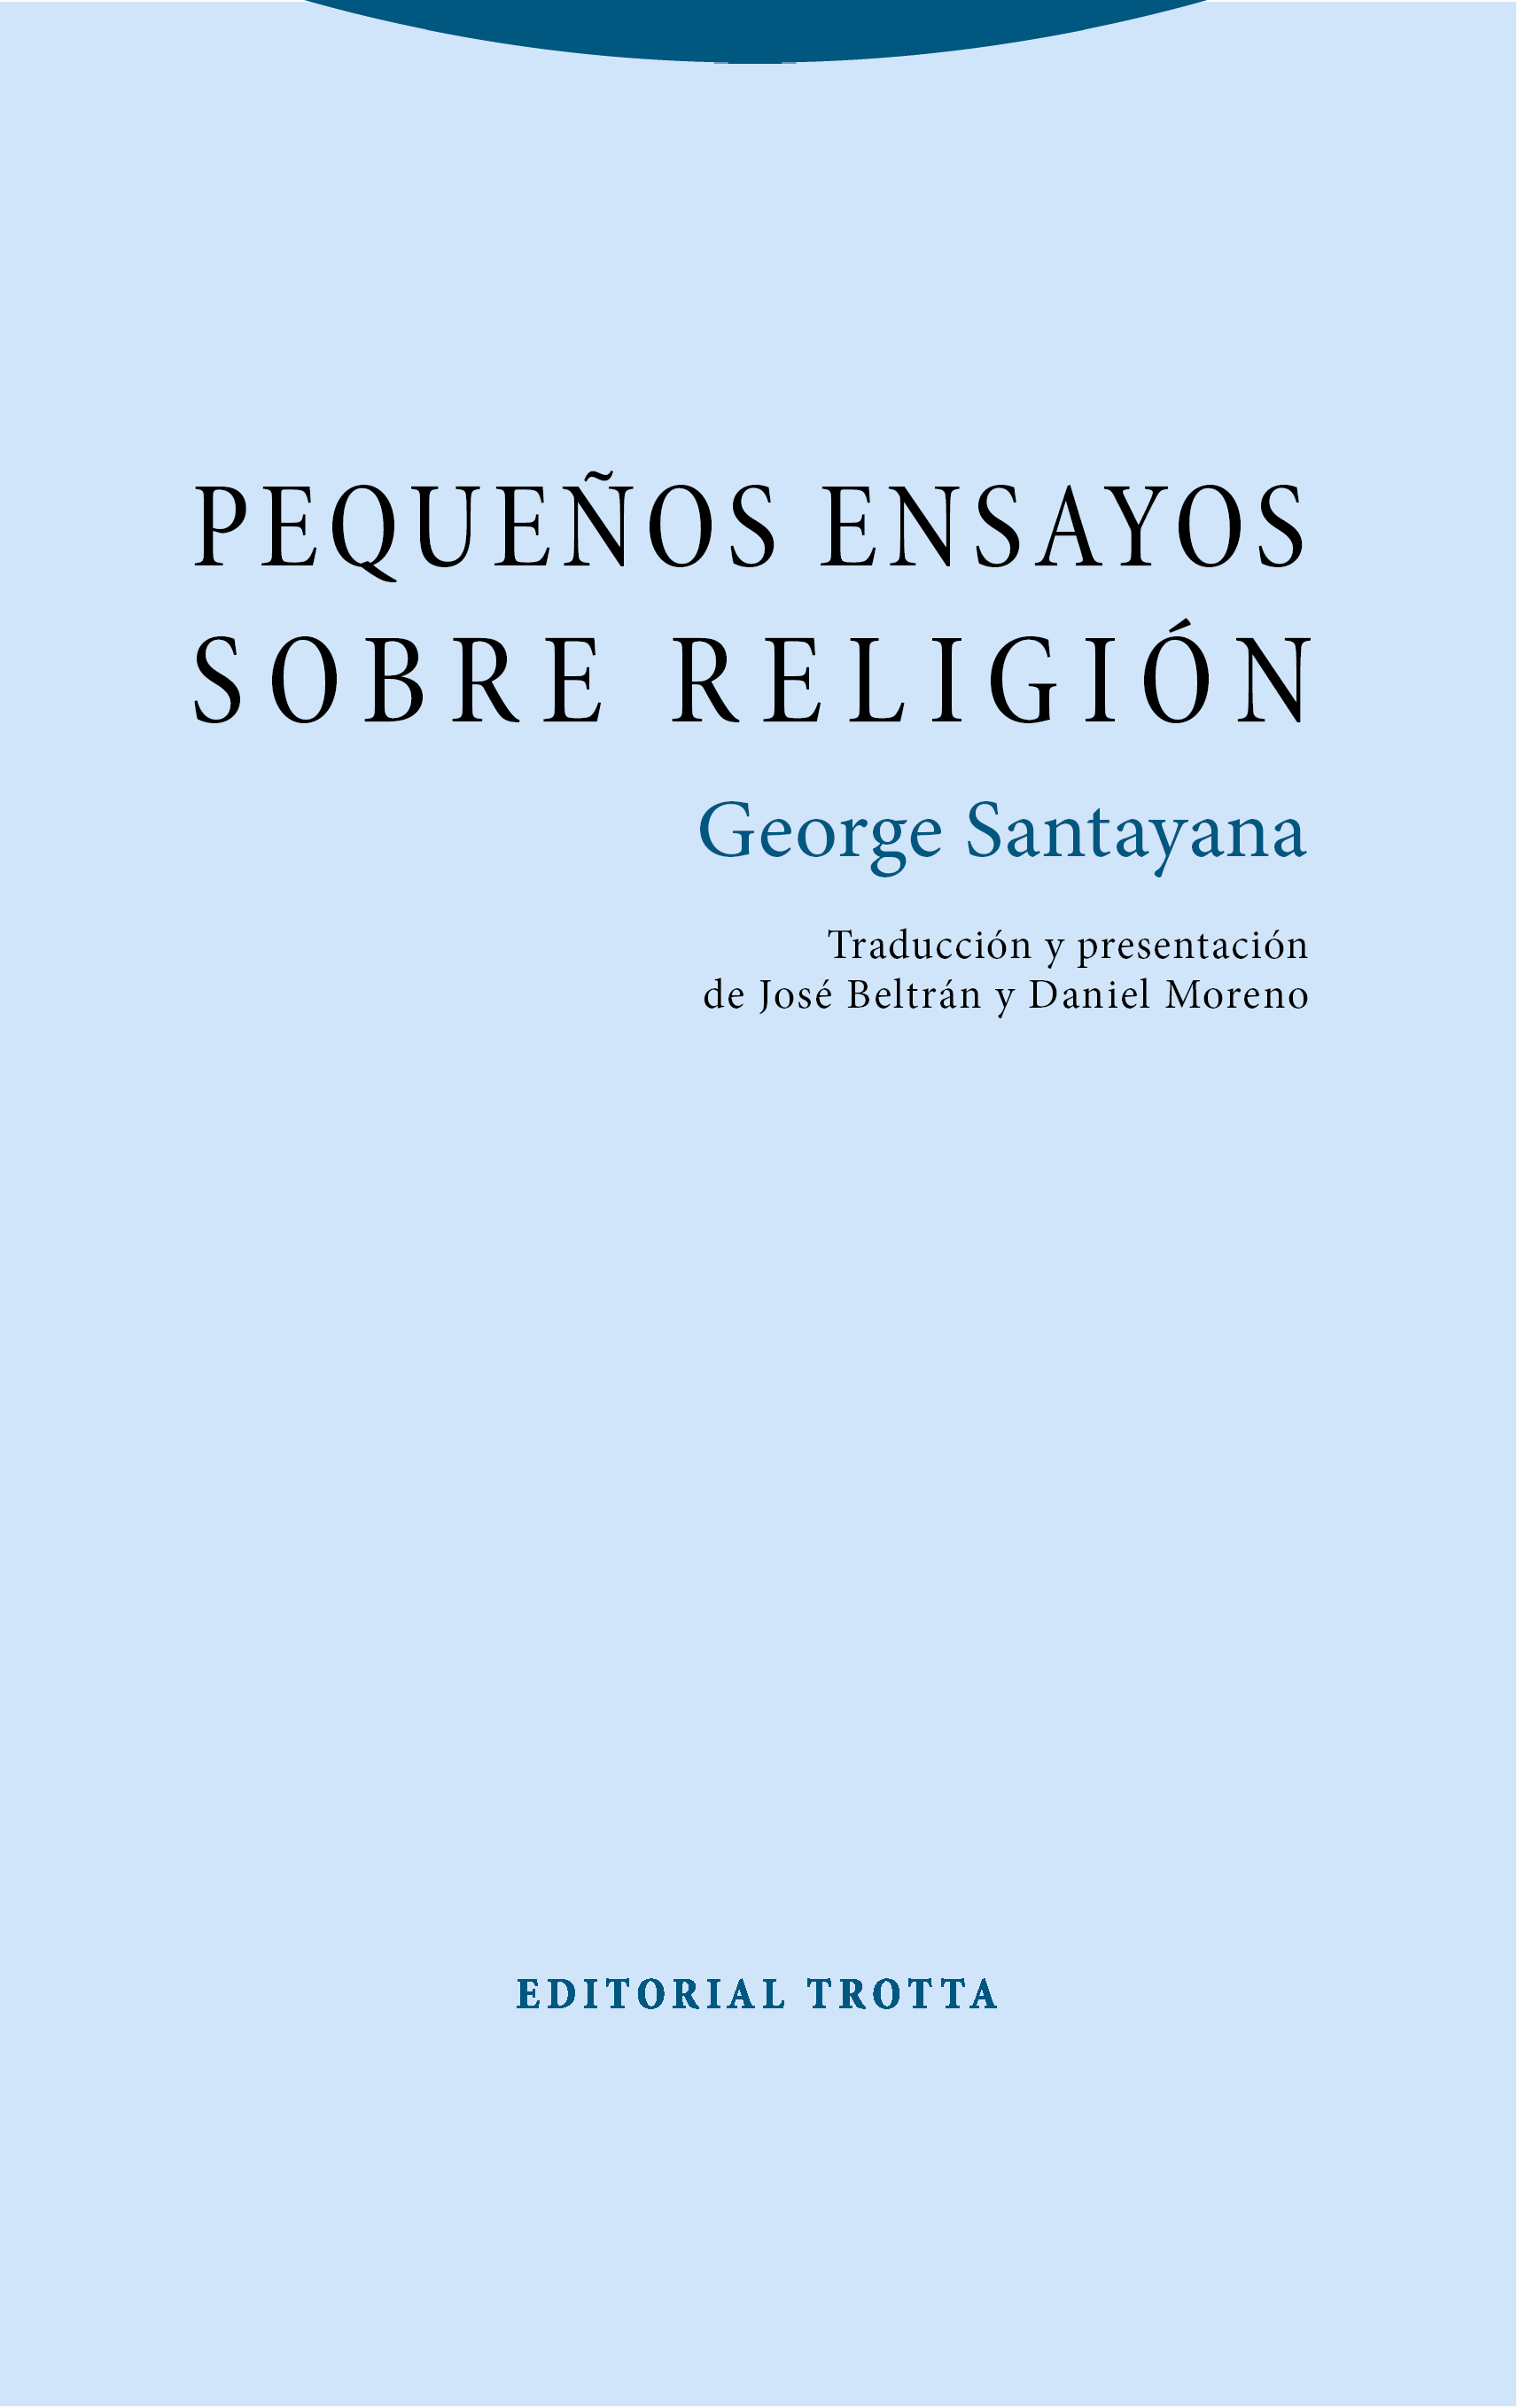 Imagen de portada del libro Pequeños ensayos sobre religión